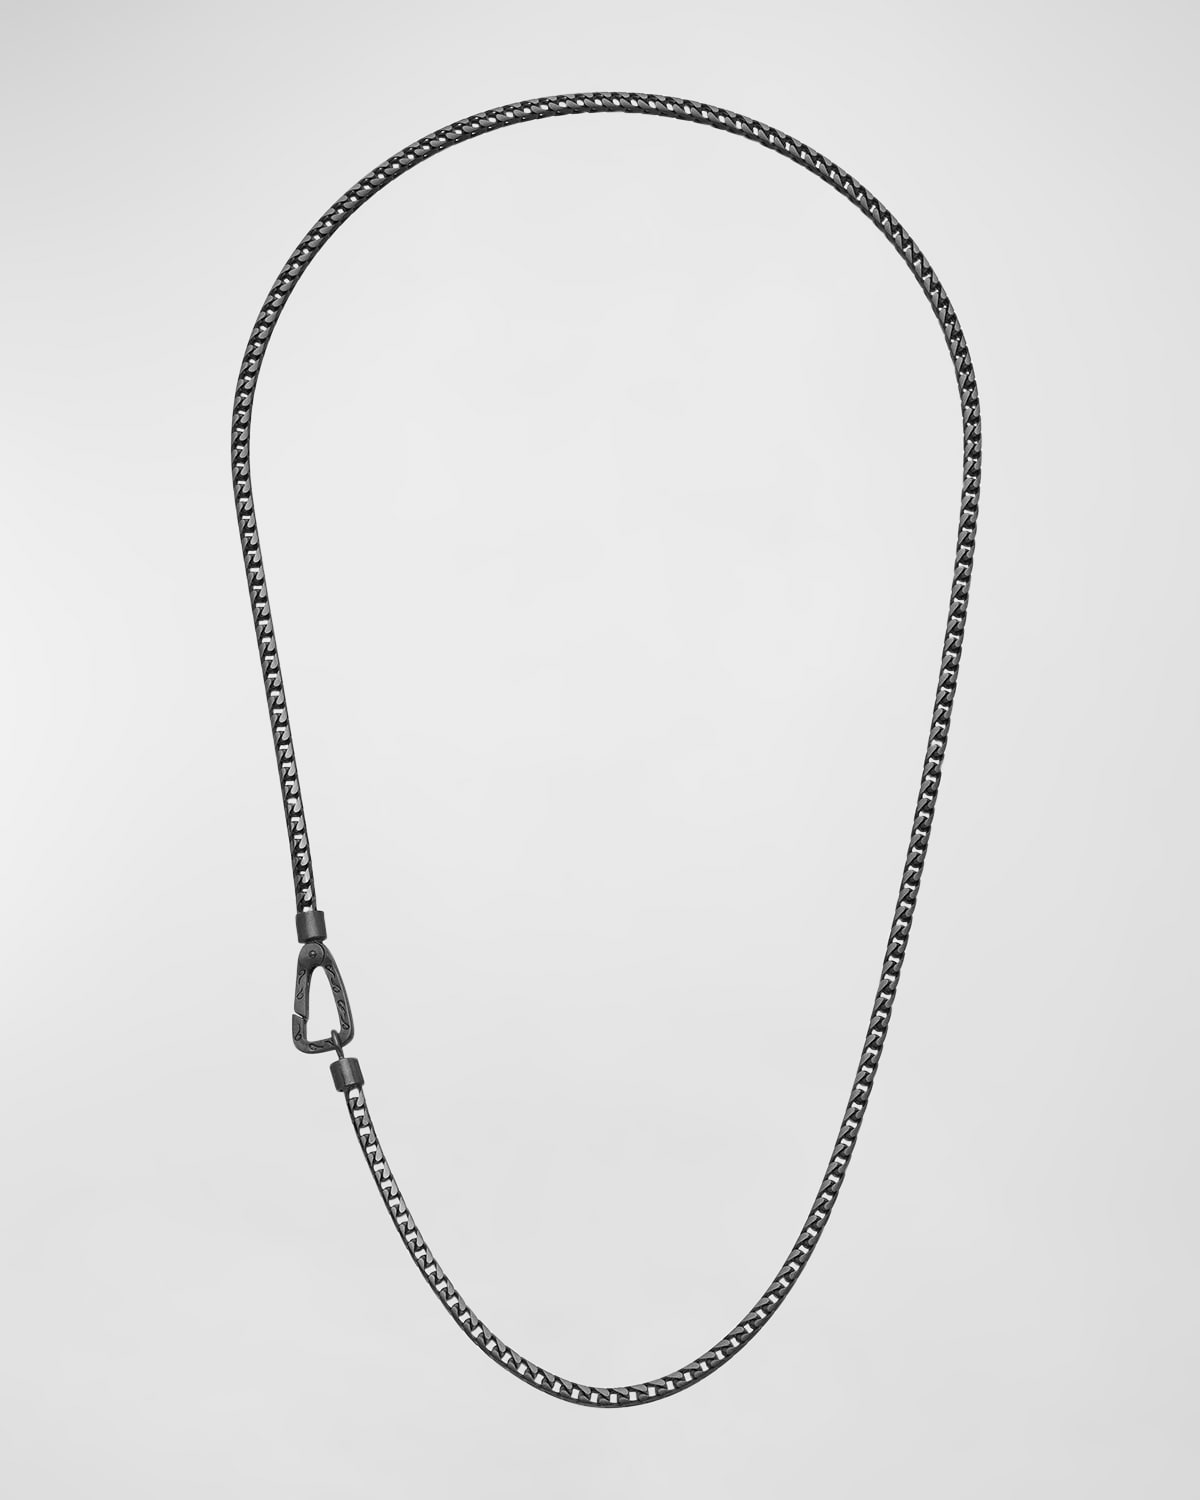 Marco Dal Maso Mesh Oxidized Silver Necklace, 20"l